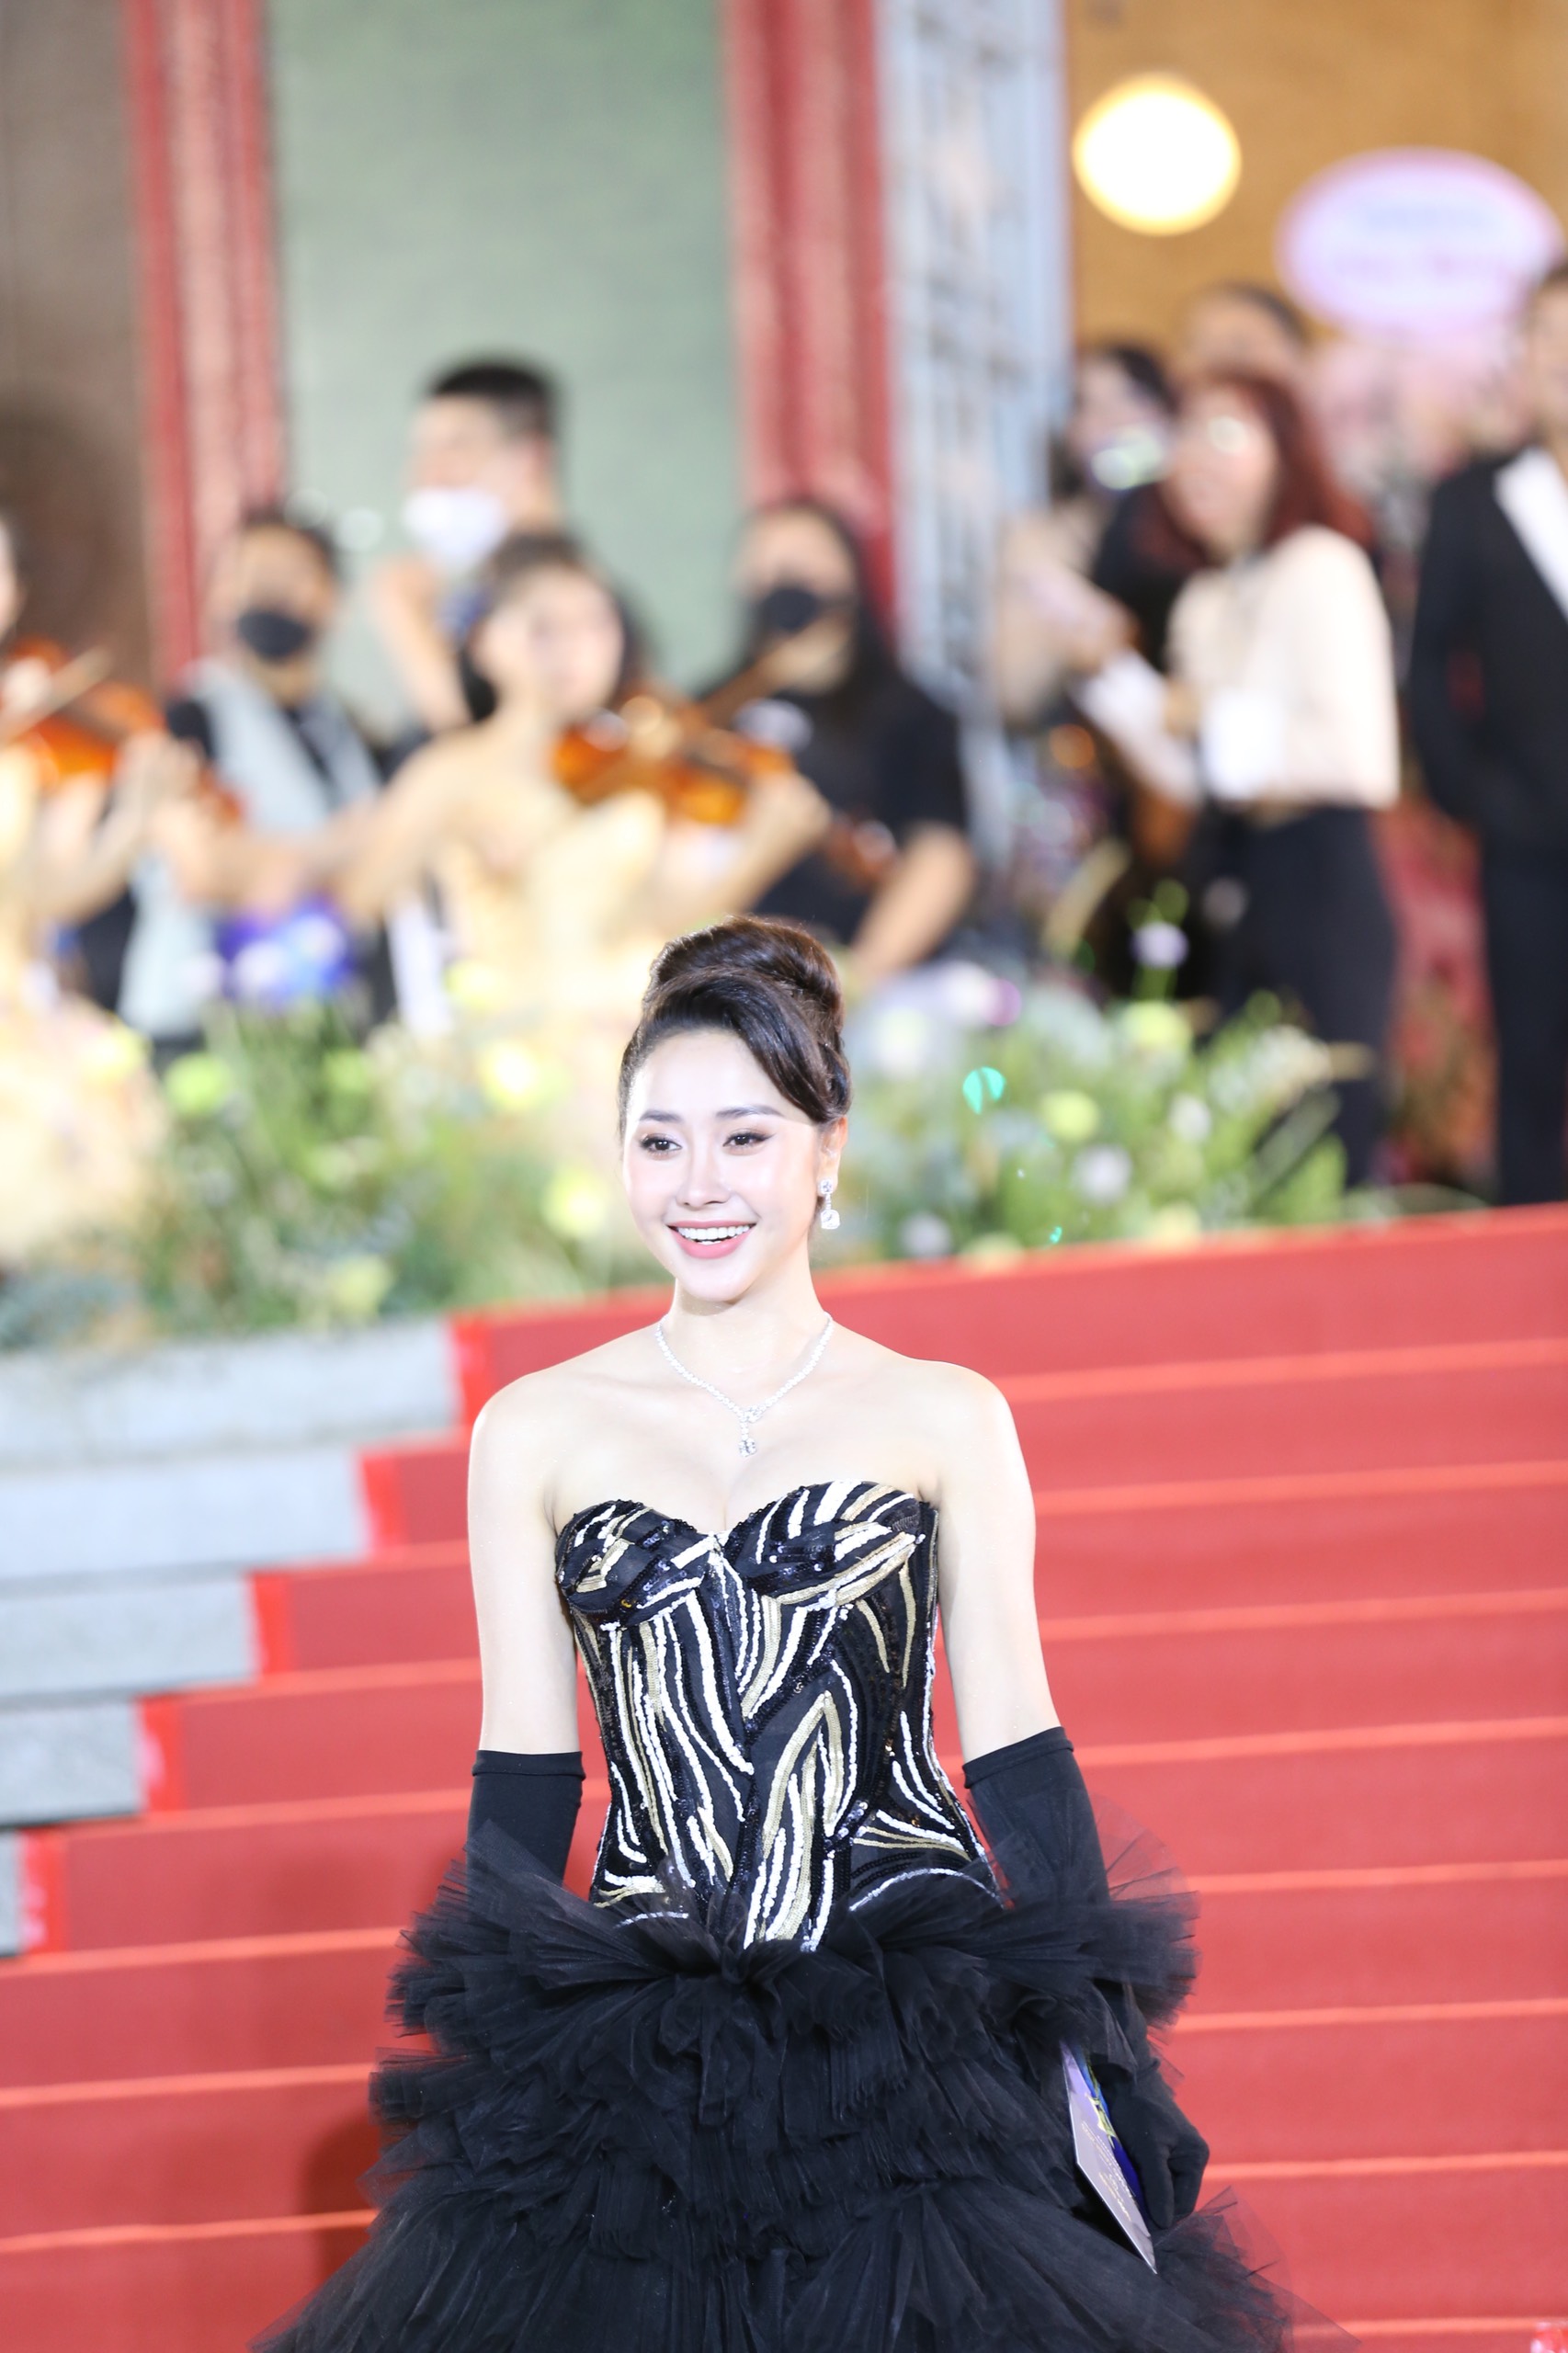 DJ Mie khoe nhan sắc như Hoa hậu, vợ một nam ca sĩ nổi tiếng lộ gương mặt khác lạ trên thảm đỏ - ảnh 7